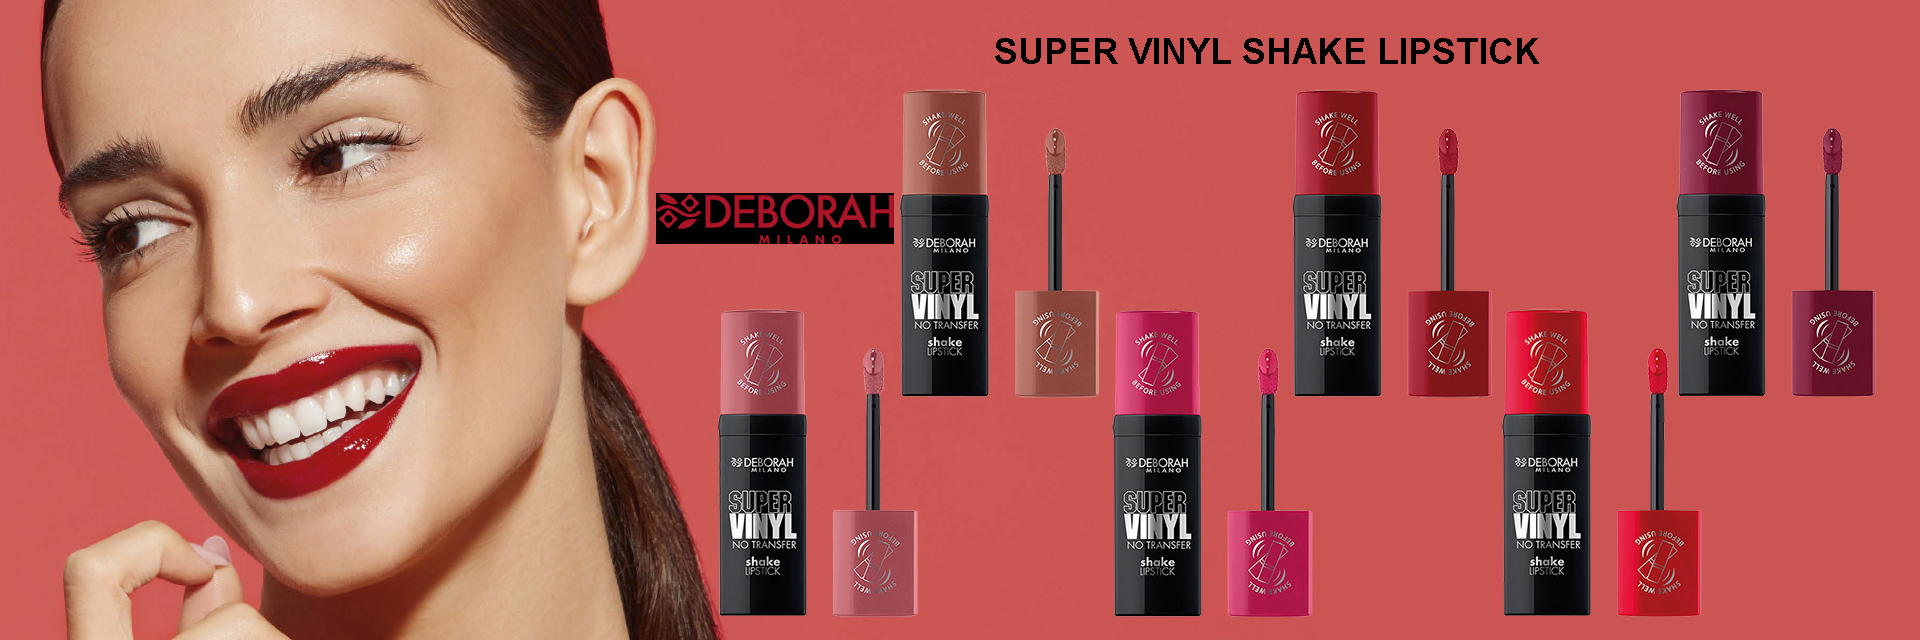 super-vinyl-shake-lipstick